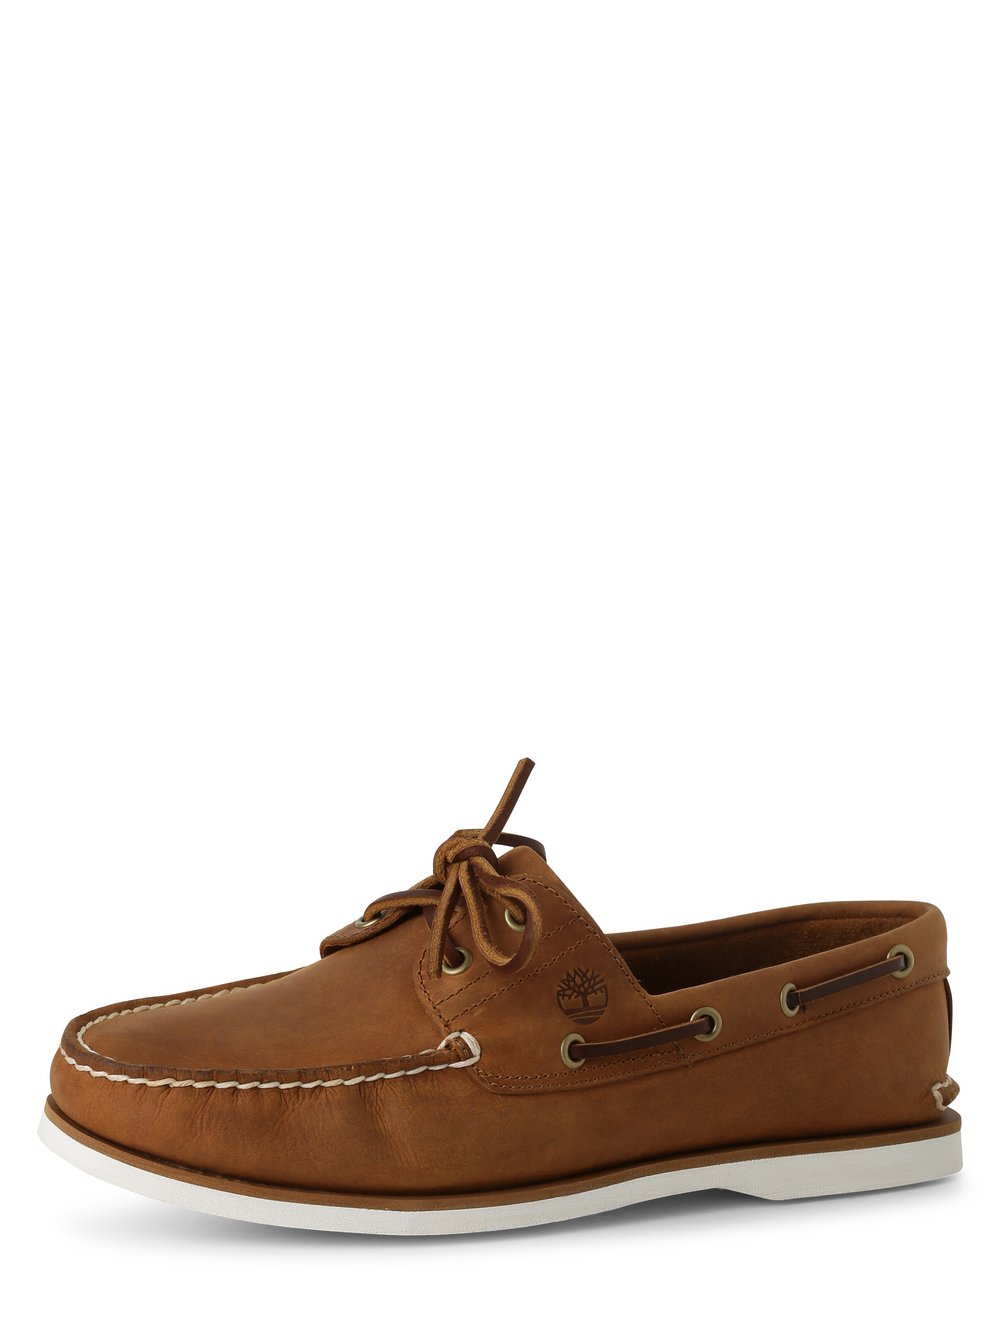 Timberland - Męskie buty ze skóry, brązowy